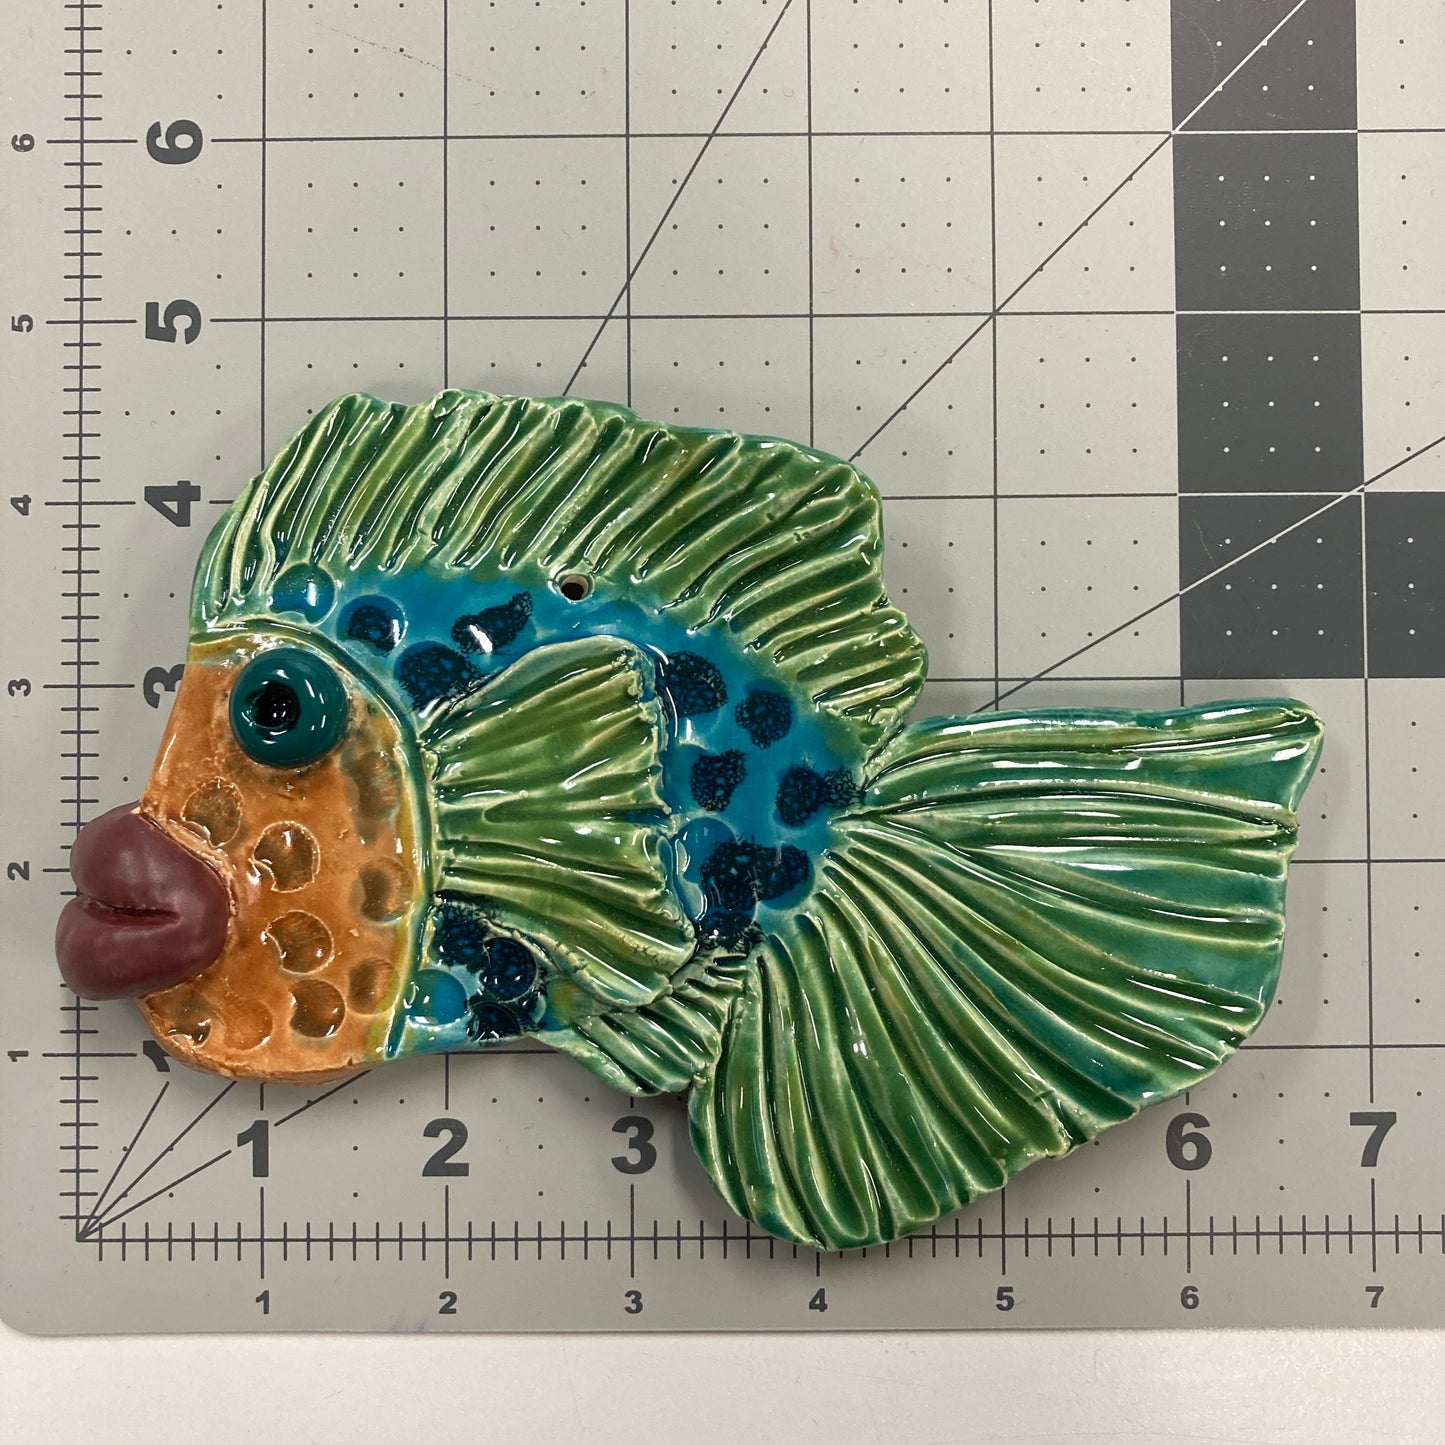 Ceramic Arts Handmade Clay Crafts Fresh Fish 6.5-inch x 4.5-inch Glazed Fish by Lynn Stahl